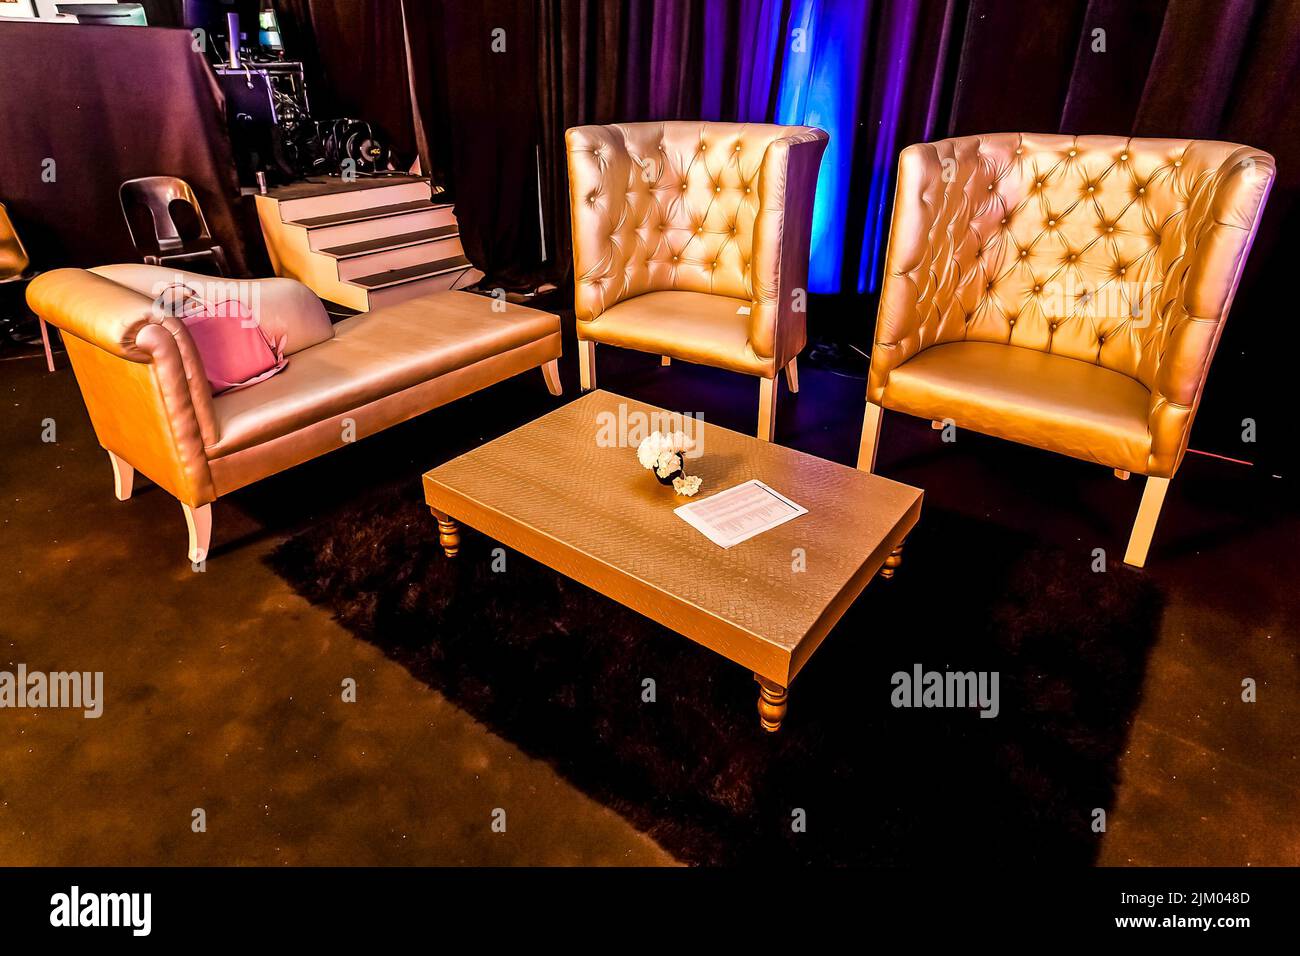 Die luxuriöse Inneneinrichtung mit Sesseln und einem Tisch auf einem Teppich bei einer Party-Veranstaltung Stockfoto